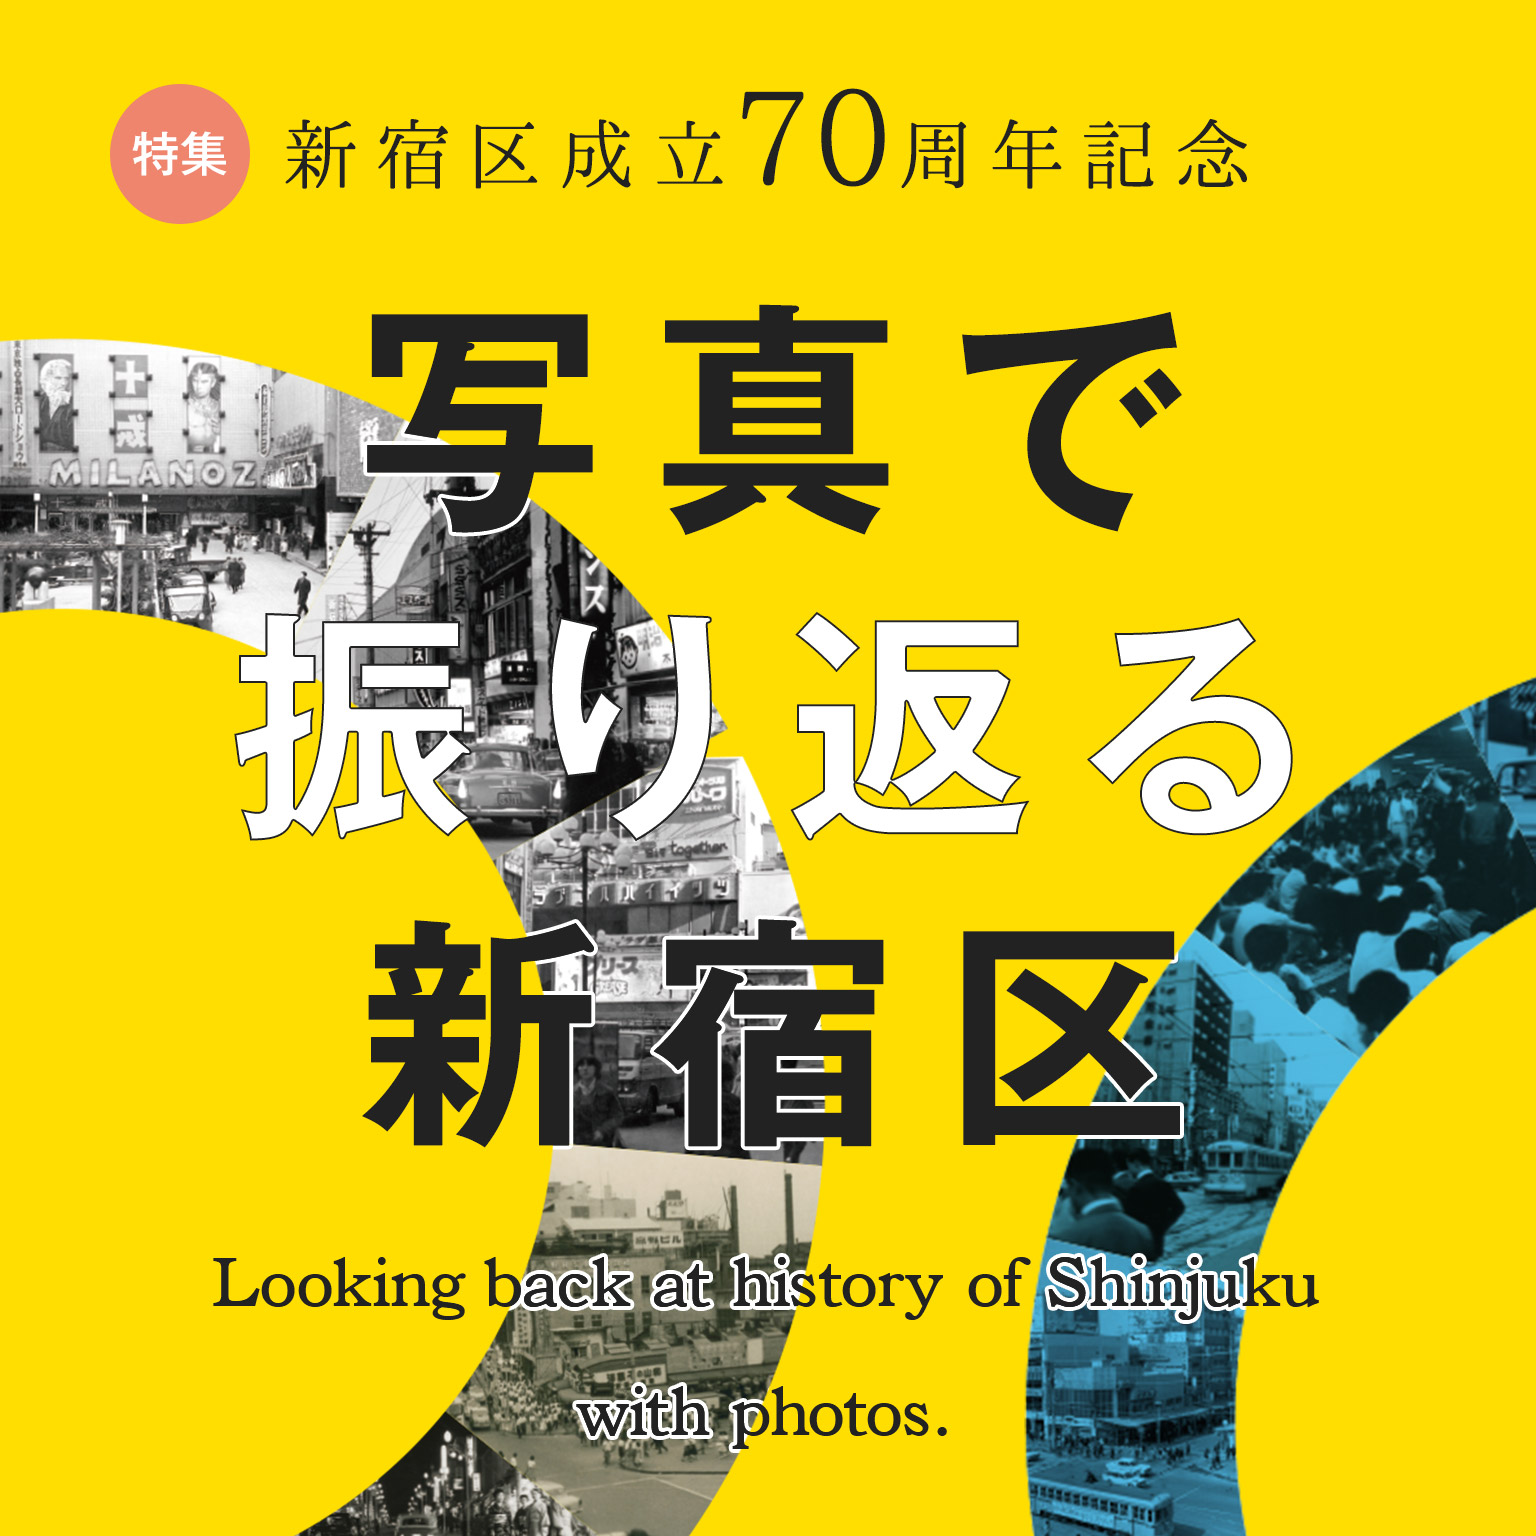 在专刊新宿区成立70周年纪念照片回头看的新宿区